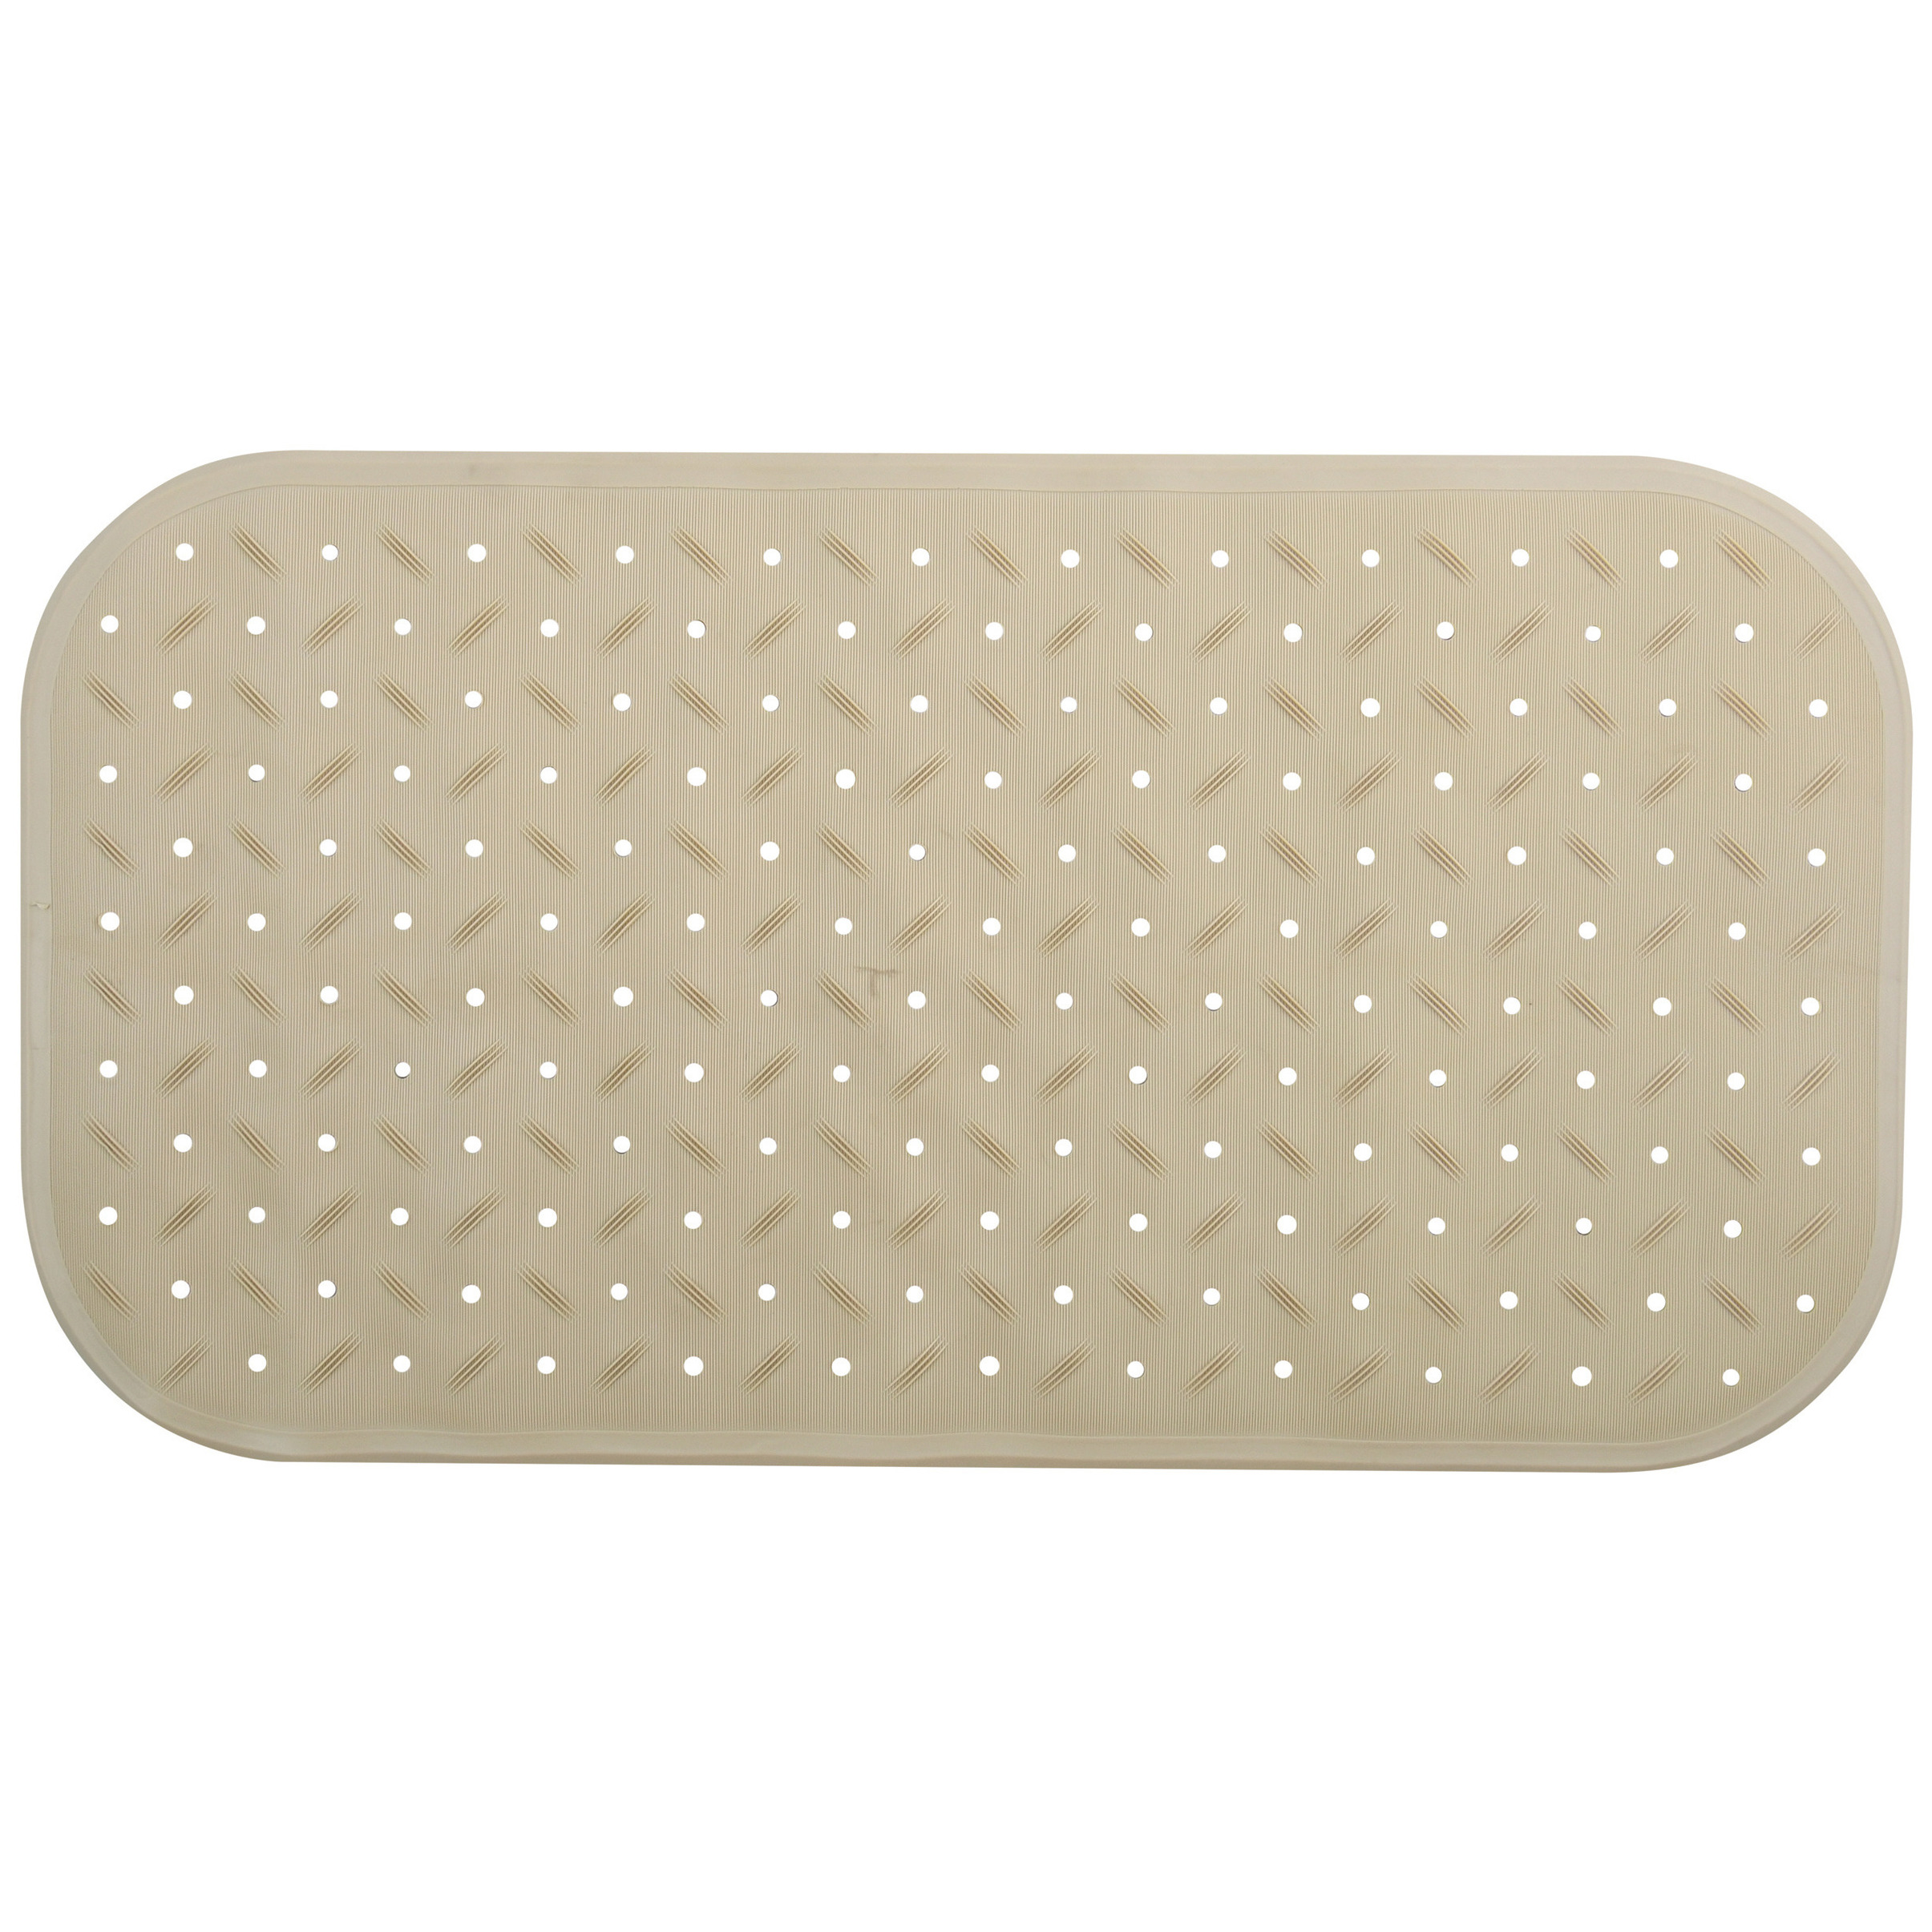 Douche-bad anti-slip mat badkamer rubber beige 36 x 65 cm rechthoek